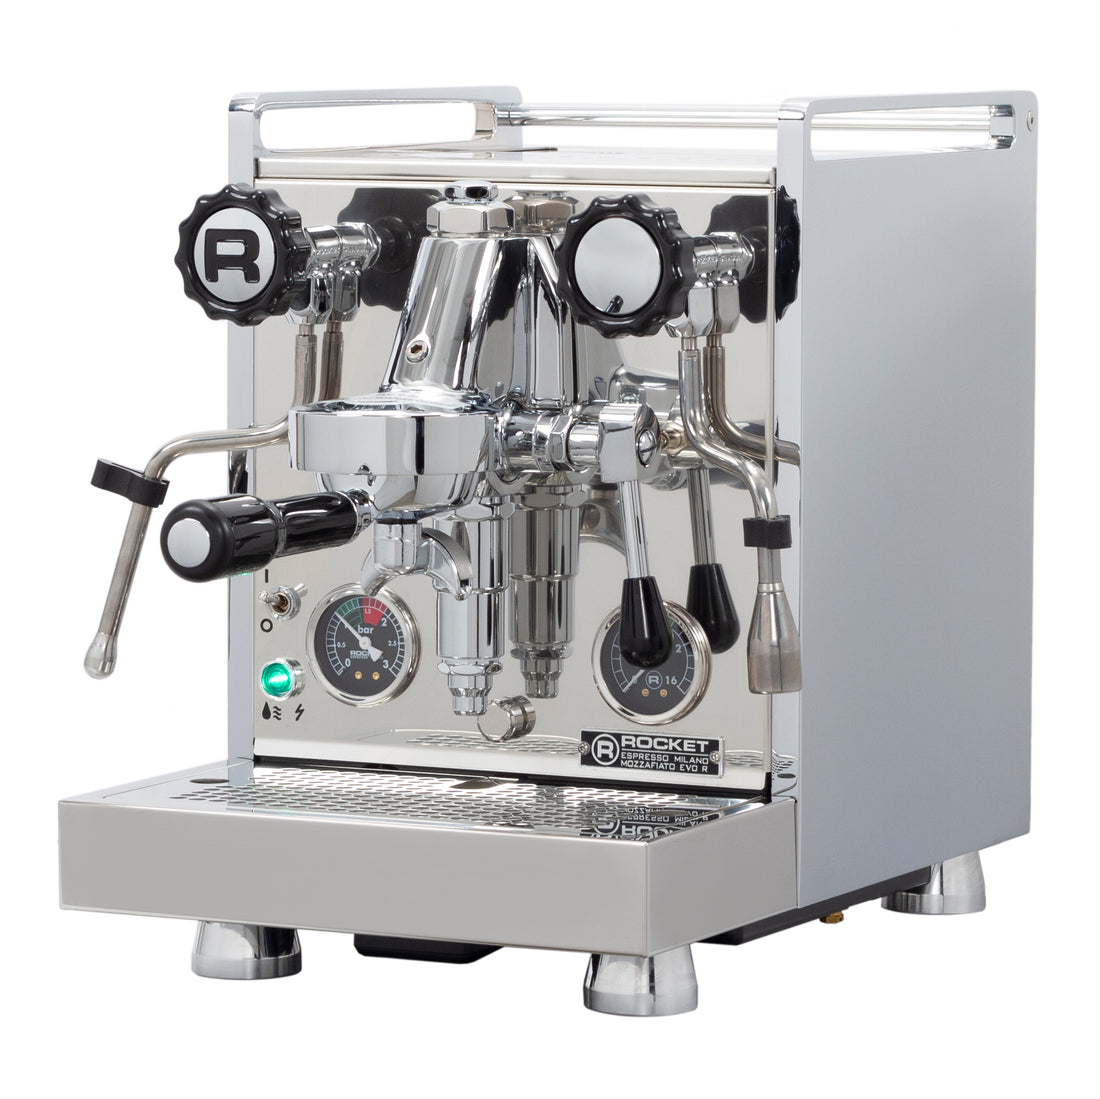 Rocket Espresso Mozzafiato Cronometro R Espresso Machine